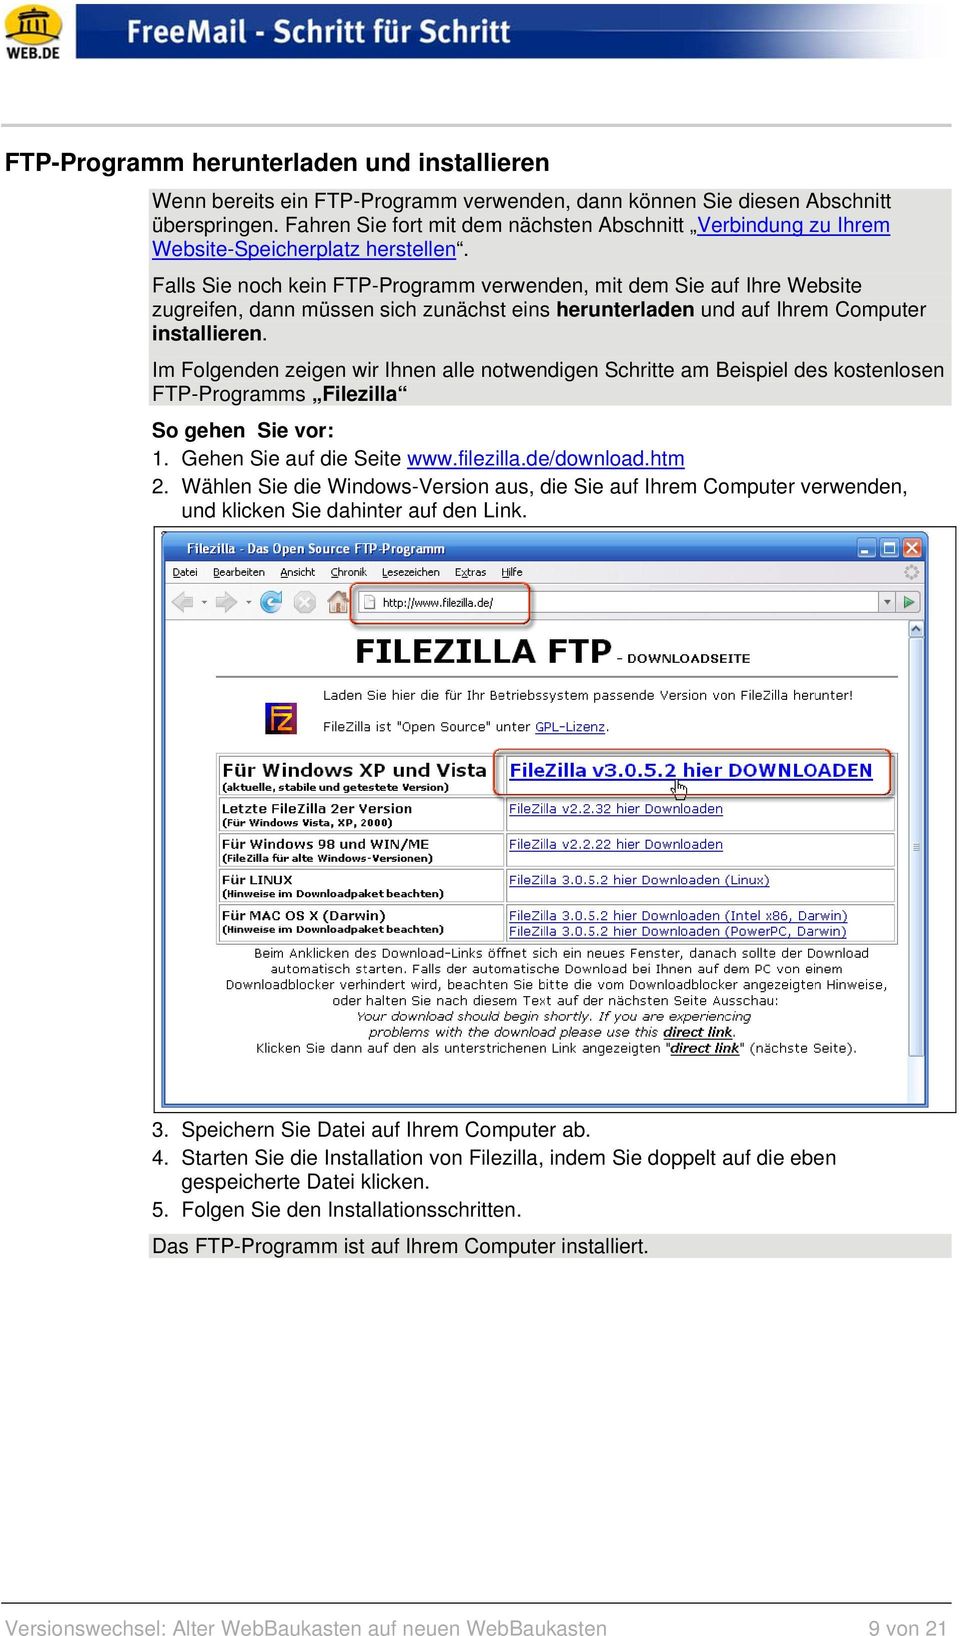 Falls Sie noch kein FTP-Programm verwenden, mit dem Sie auf Ihre Website zugreifen, dann müssen sich zunächst eins herunterladen und auf Ihrem Computer installieren.